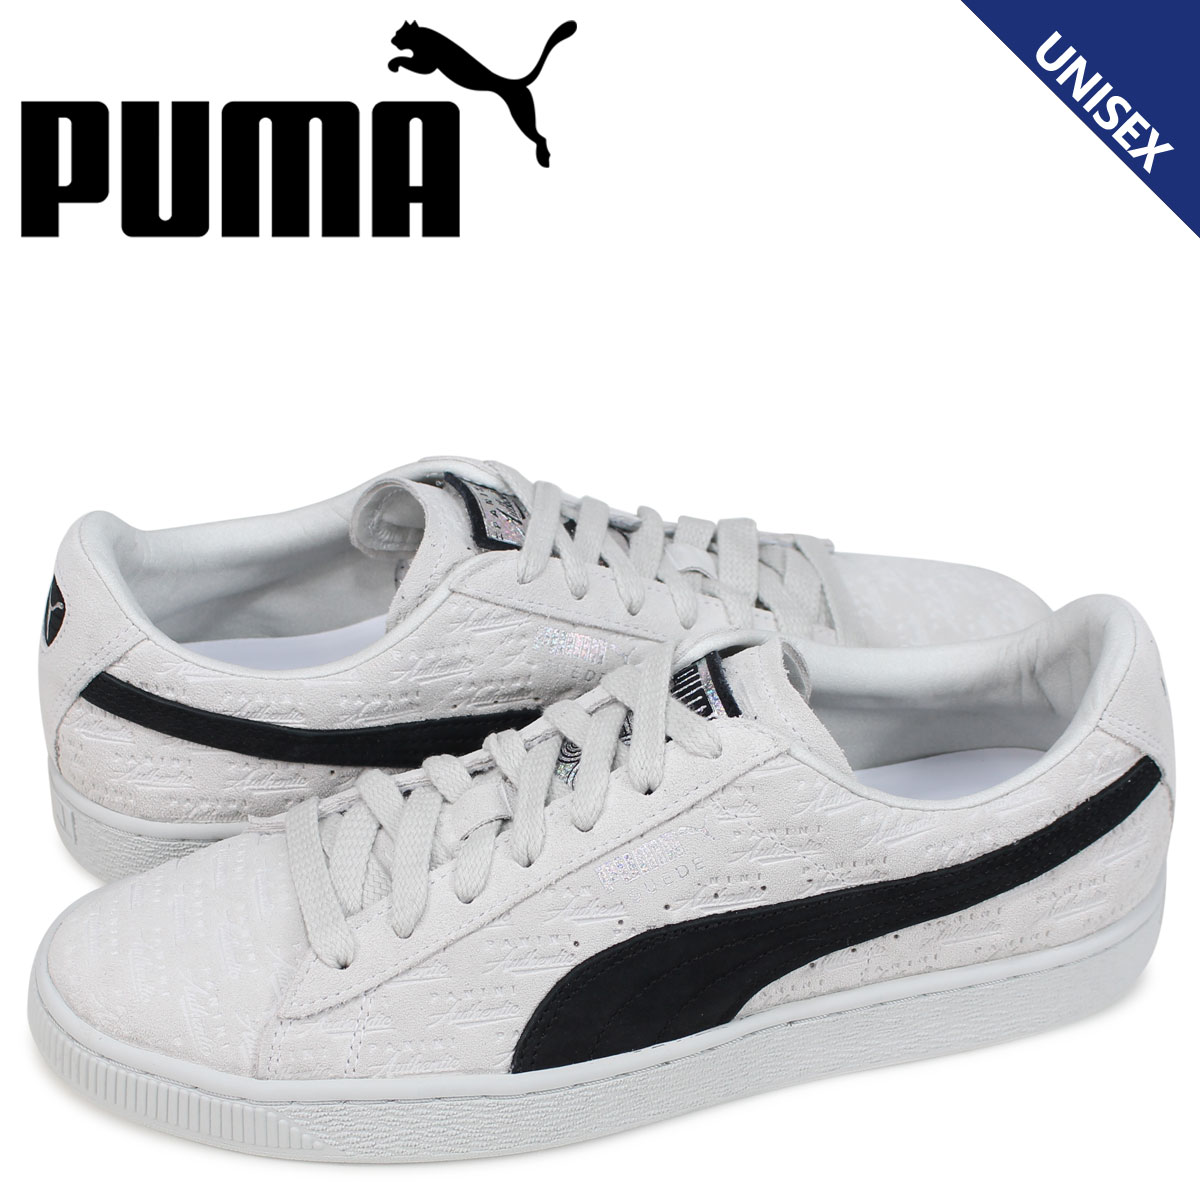 puma suede classic white